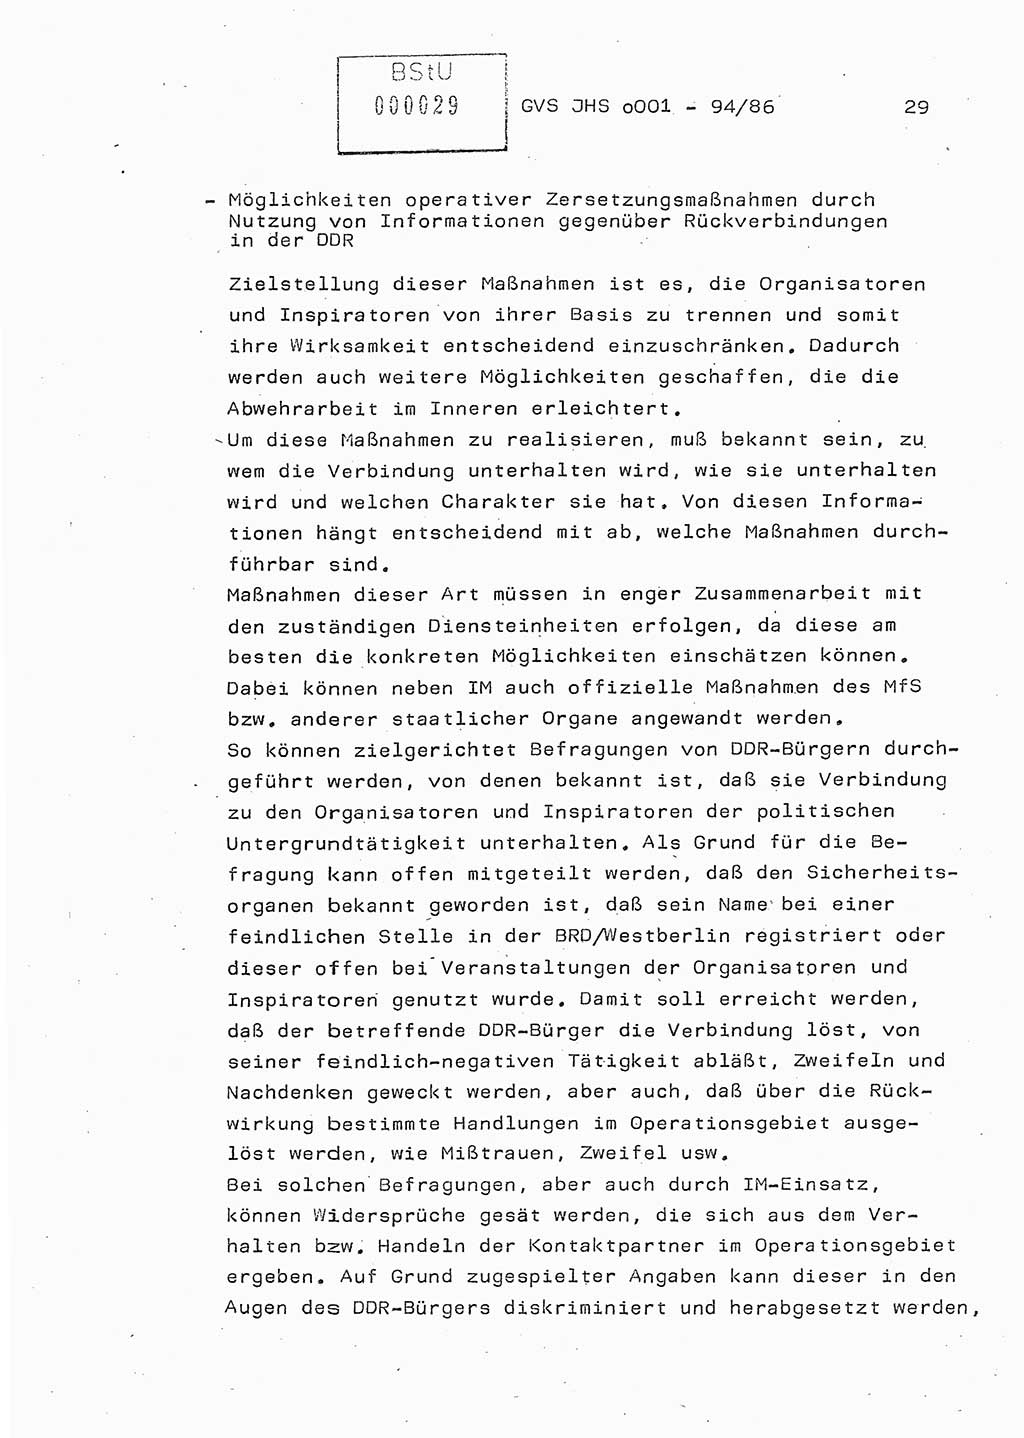 Diplomarbeit Oberleutnant Volkmar Pechmann (HA ⅩⅩ/5), Ministerium für Staatssicherheit (MfS) [Deutsche Demokratische Republik (DDR)], Juristische Hochschule (JHS), Geheime Verschlußsache (GVS) o001-94/86, Potsdam 1986, Blatt 29 (Dipl.-Arb. MfS DDR JHS GVS o001-94/86 1986, Bl. 29)